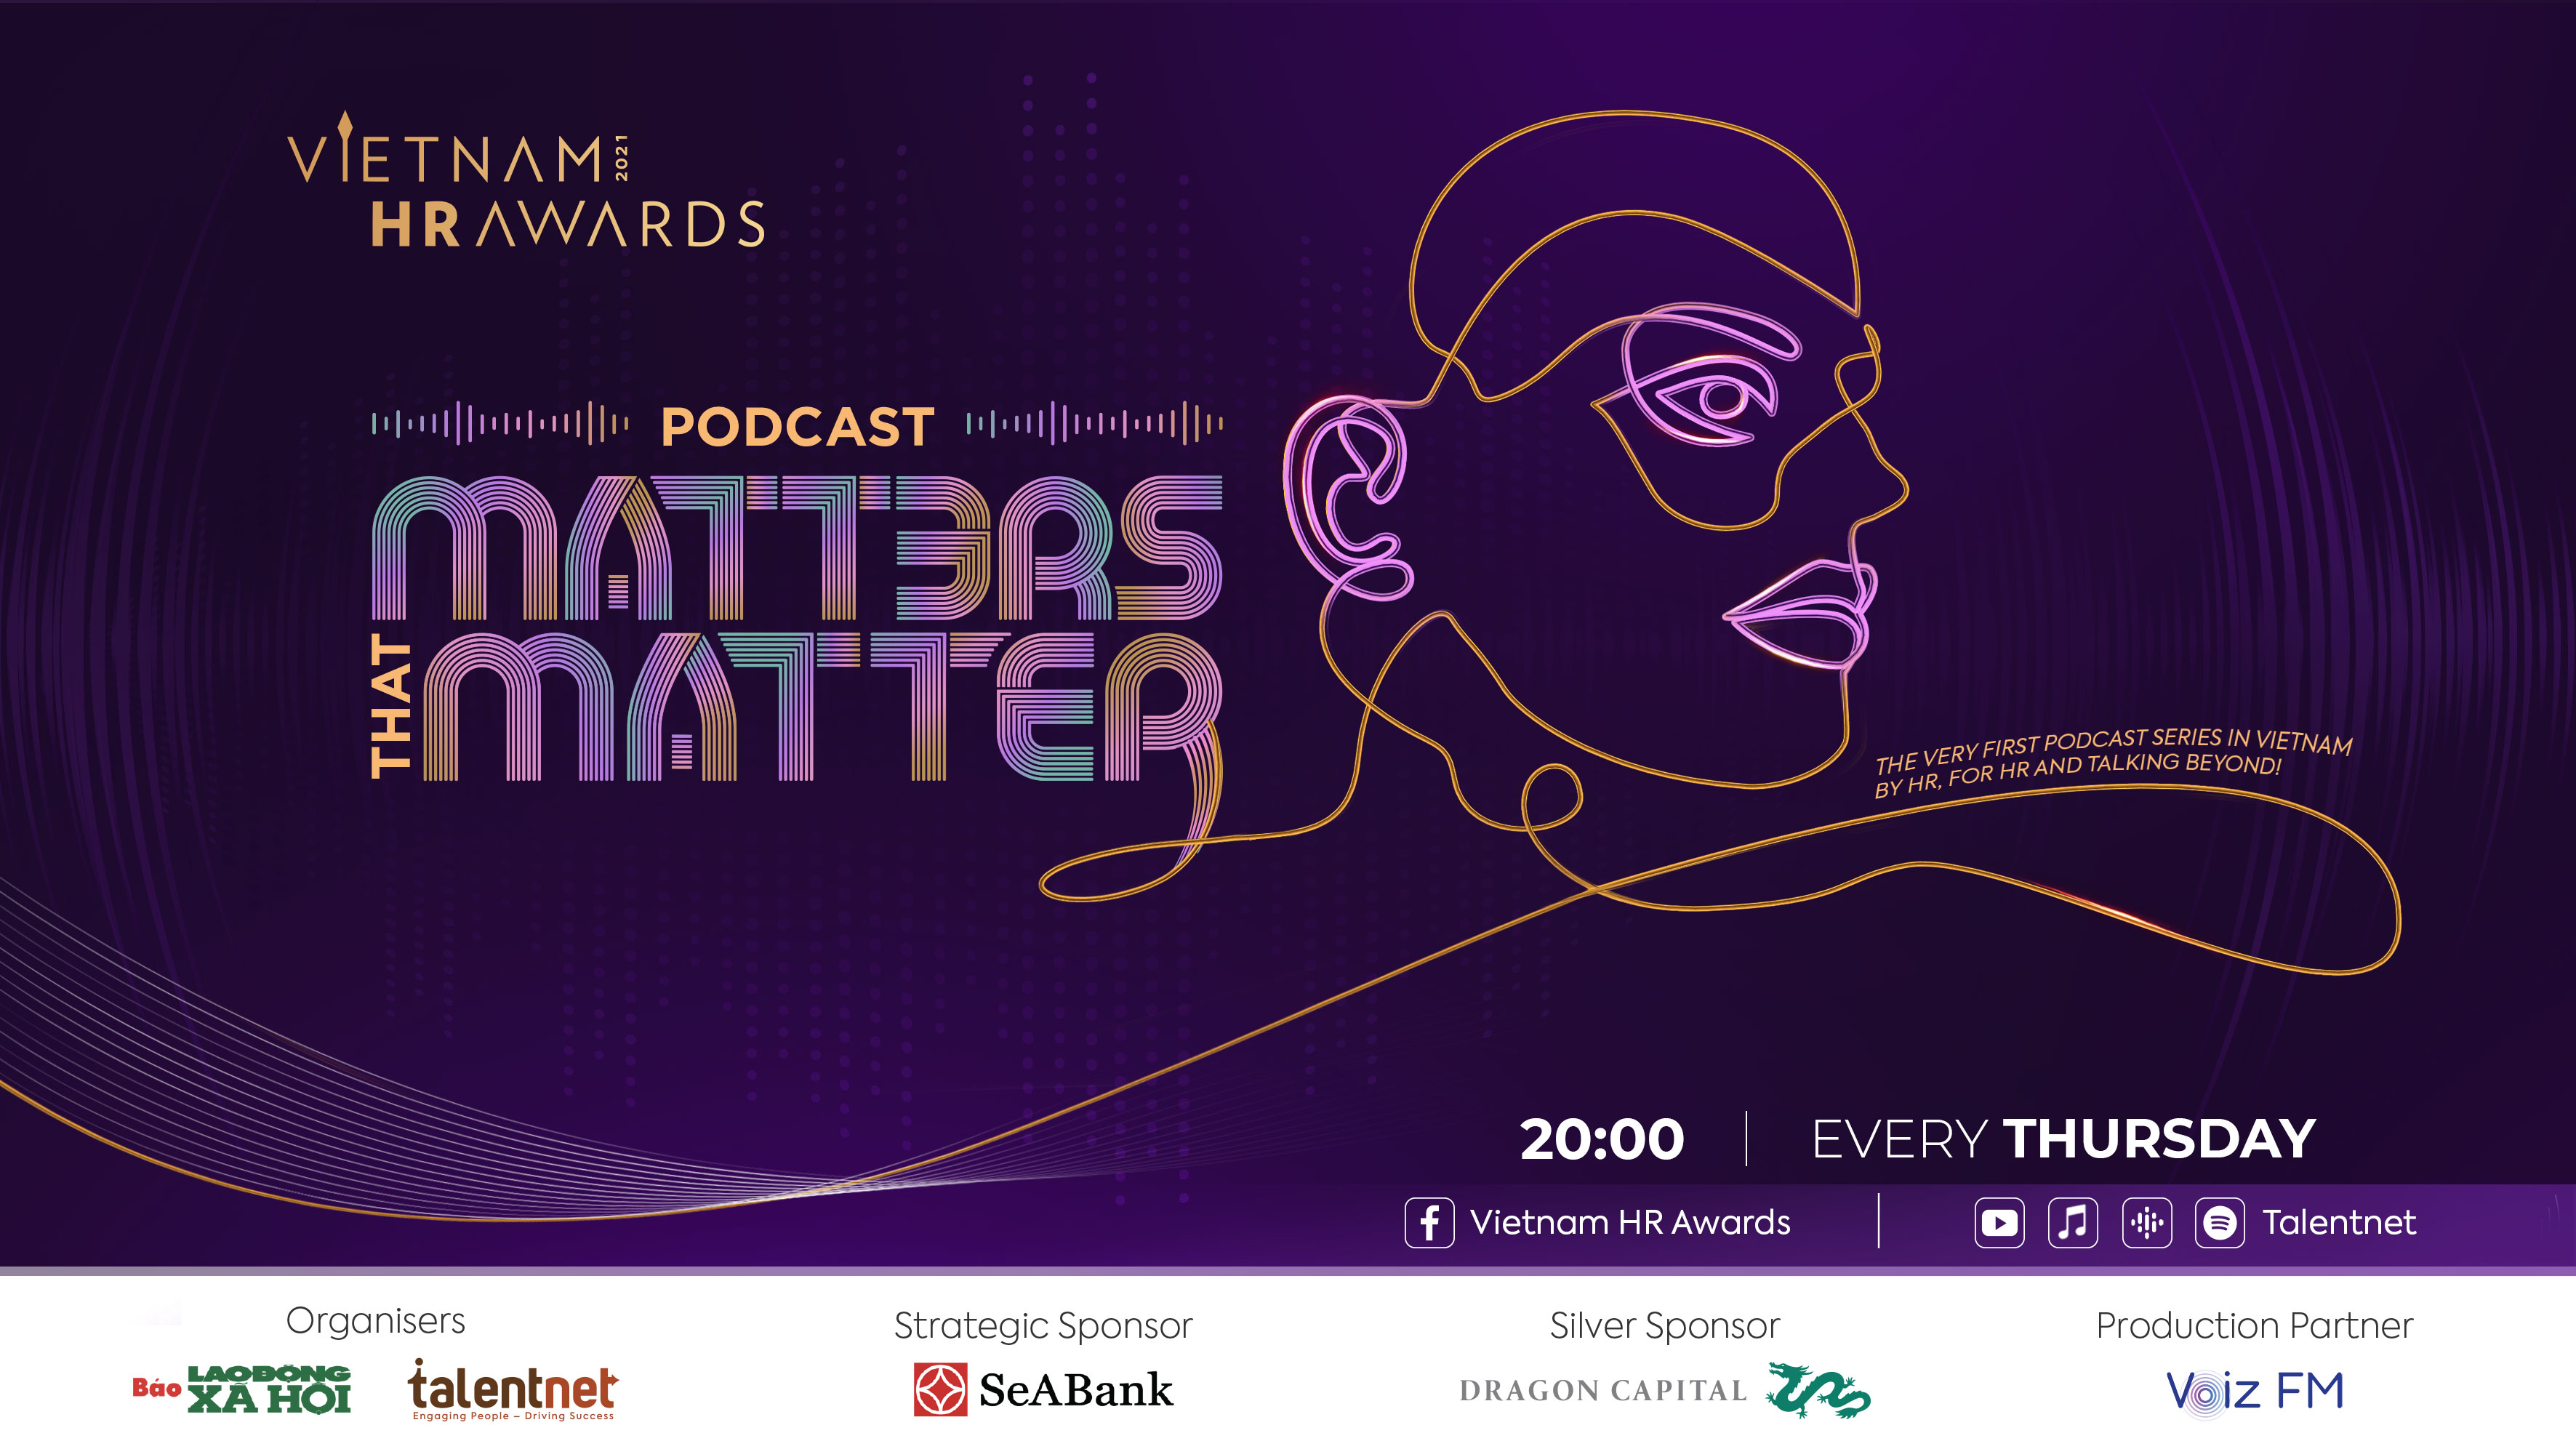 Vietnam HR Awards Podcast - Matters That Matter